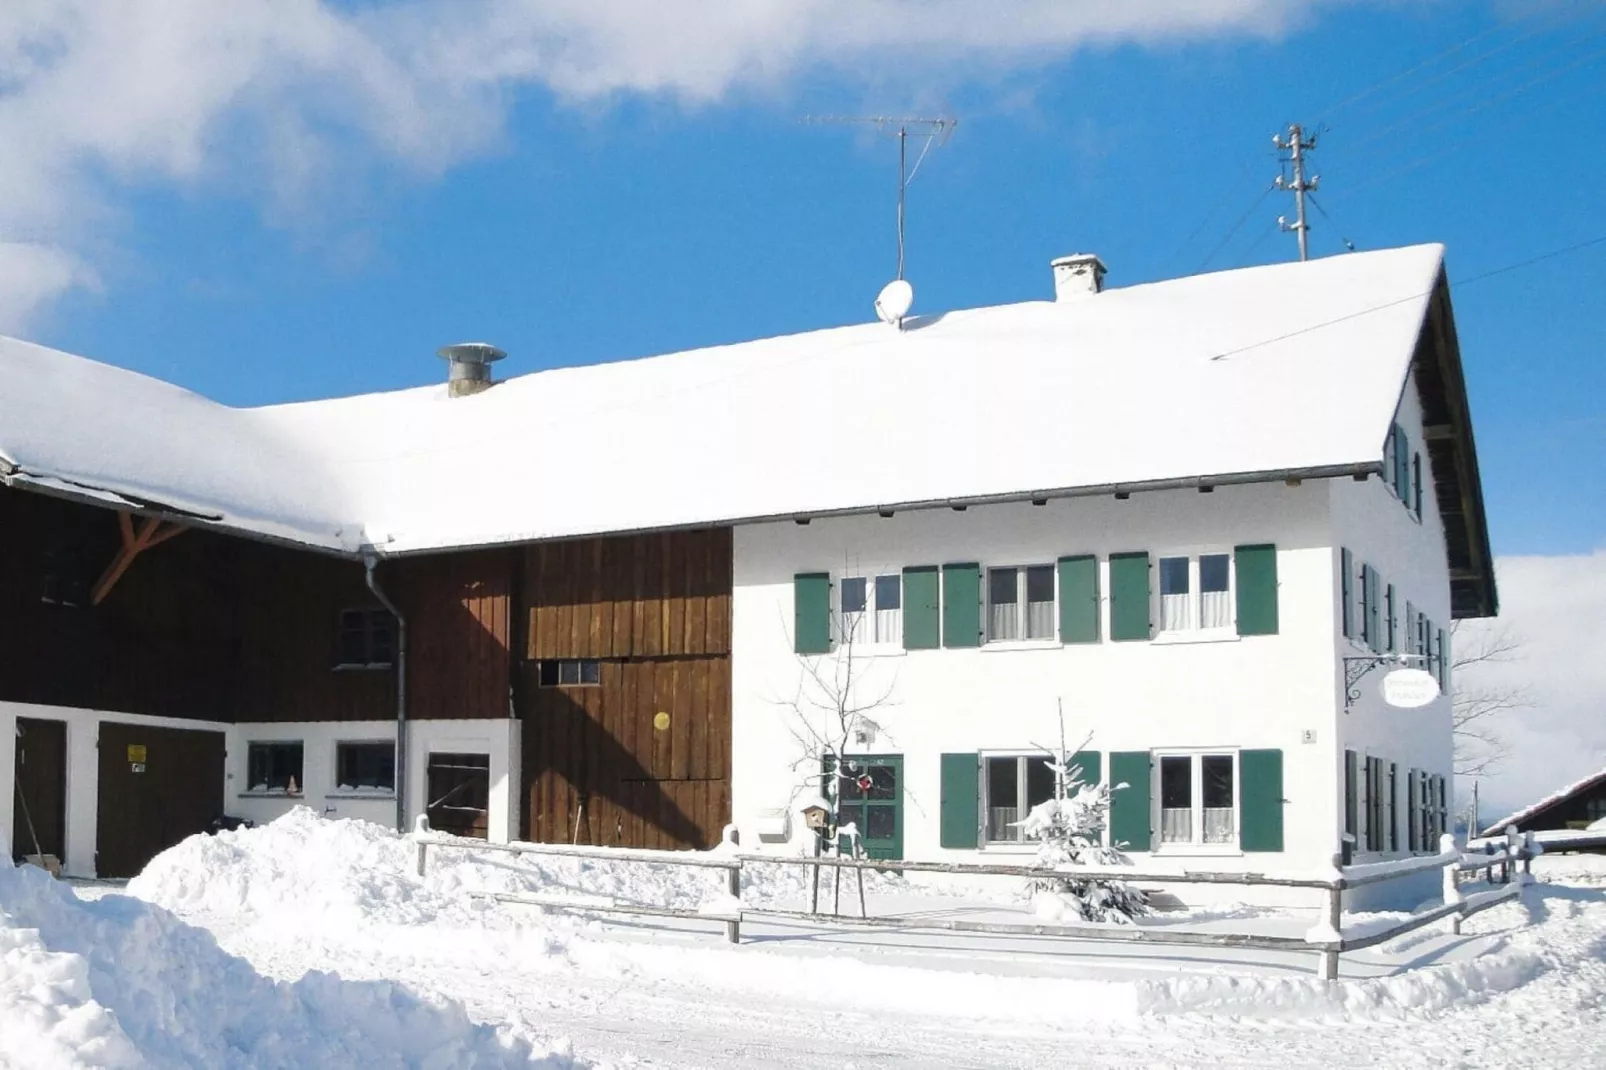 Holiday farm Friesenried-Bauernhaus Amm-Exterieur winter